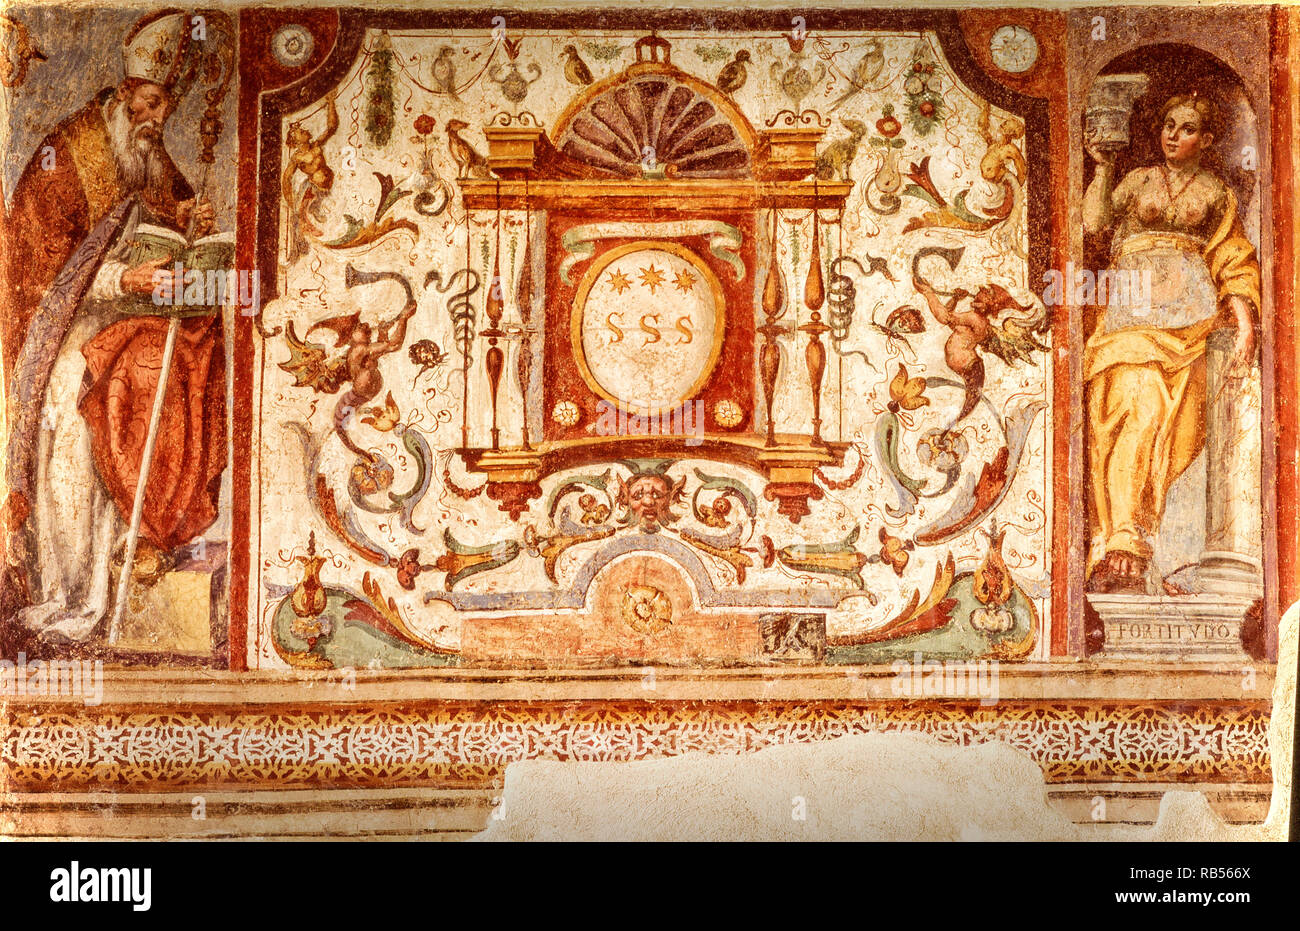 Italia Basilicata Montescaglioso biblioteca de la abadía de San Michele del abad frescos - la virtud y la fuerza, lado derecho médicos Foto de stock